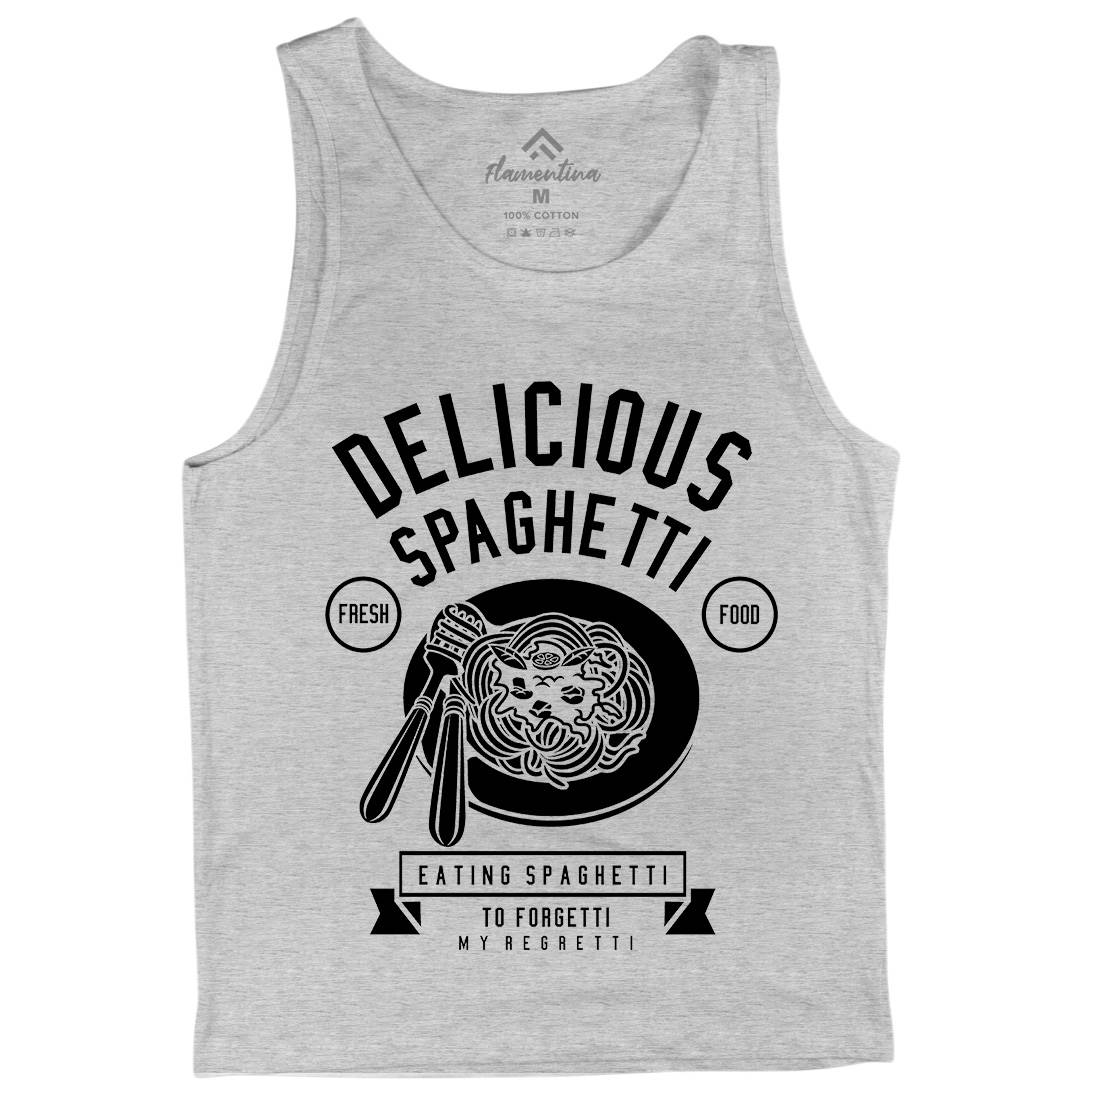 Delicious Spaghetti Mens Tank Top Vest Food B530